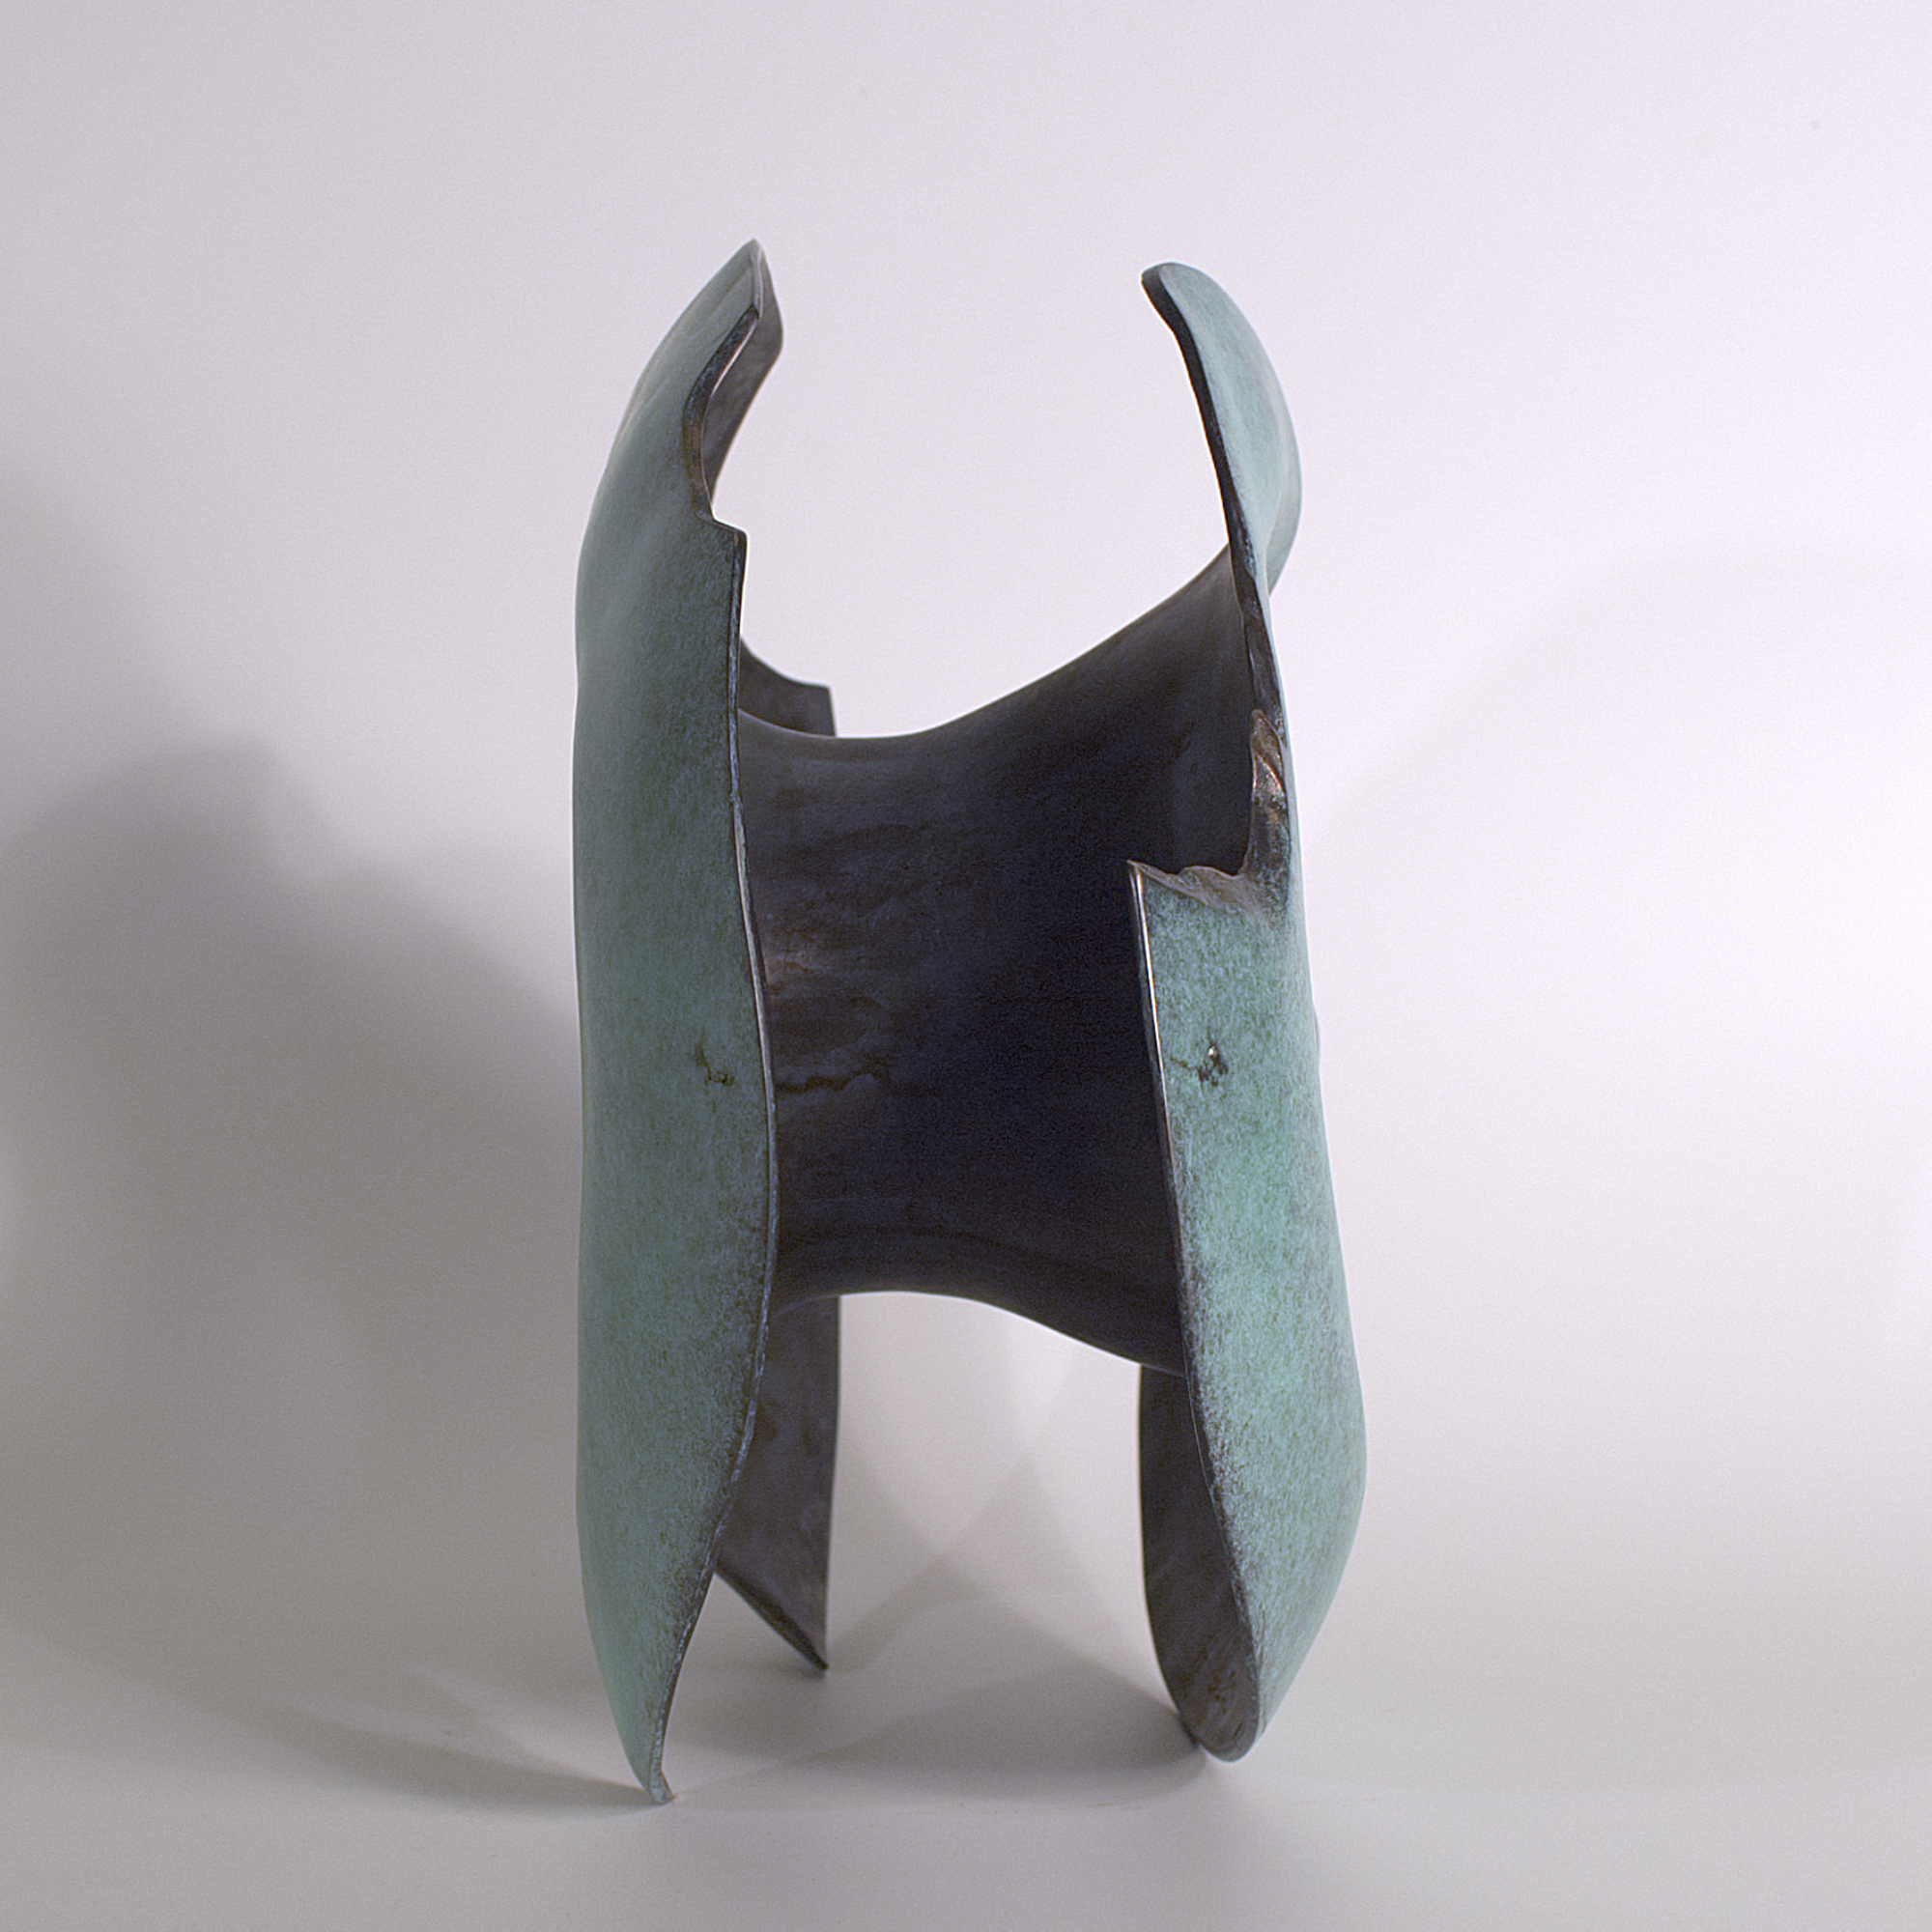 Annular form #1. Modern bronze sculpture by Steve Howlett. 2013